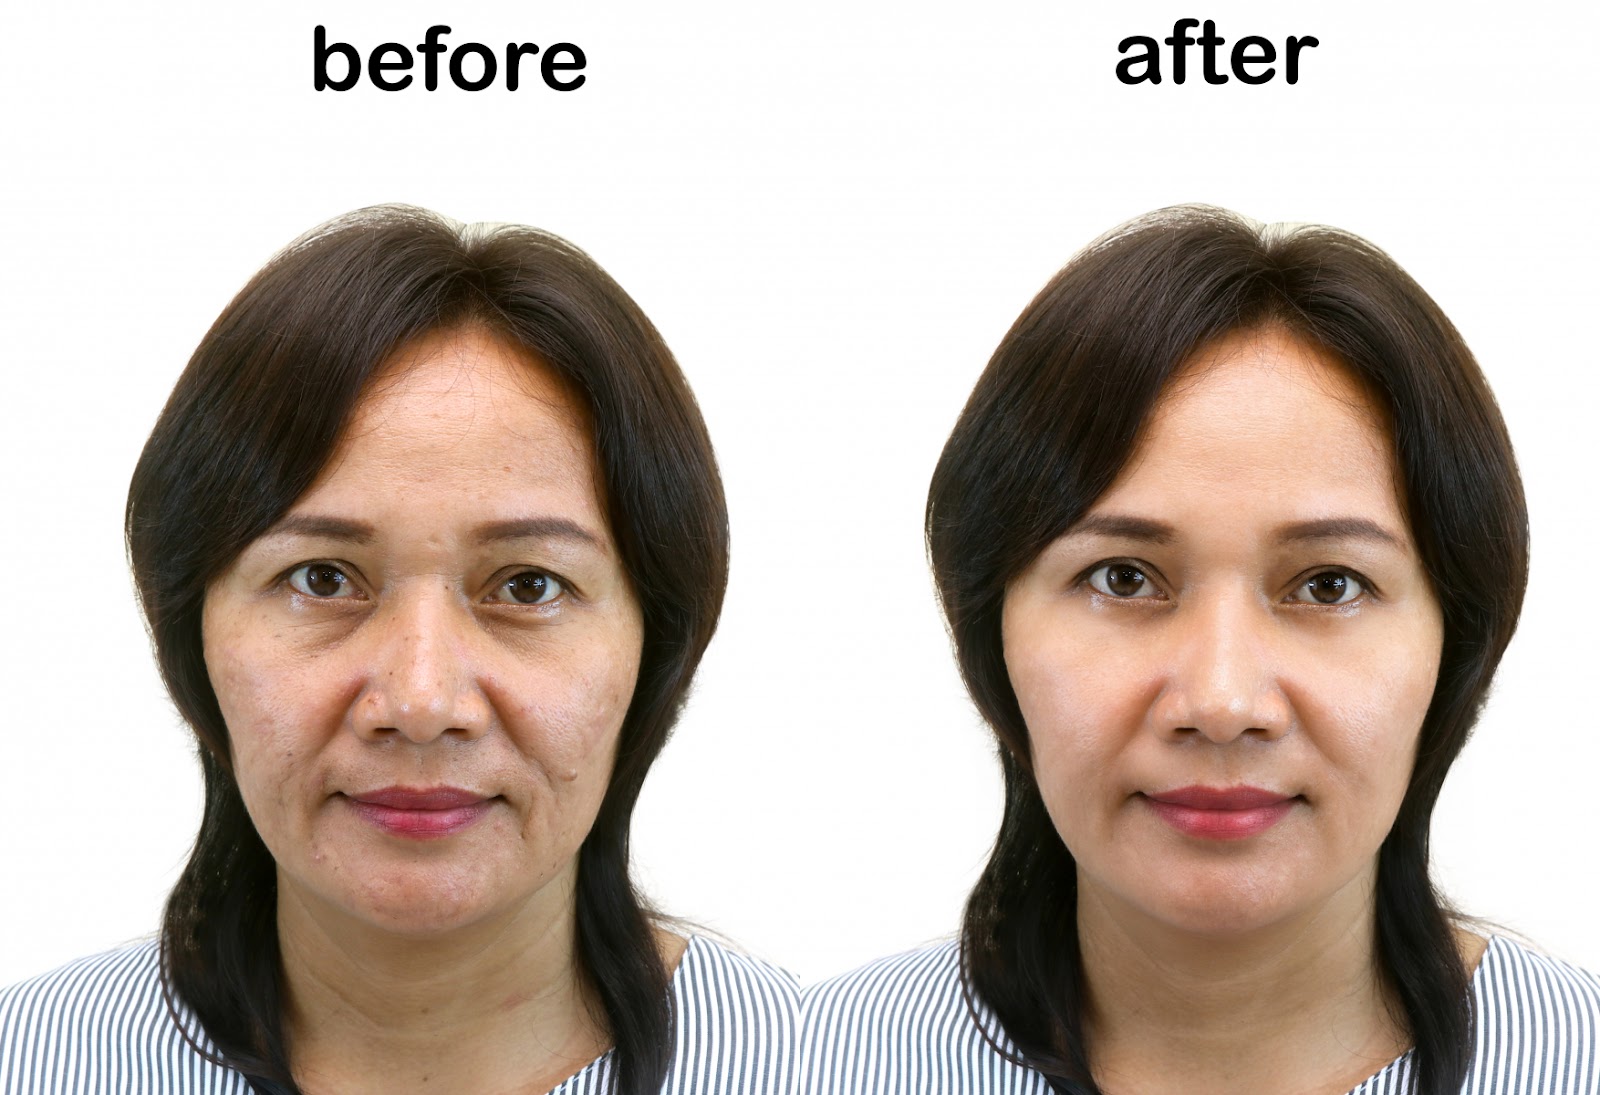 Căng da mặt bằng chỉ collagen - Đánh bay các nếp nhăn phần đuôi mắt, trán, rãnh mũi má, và toàn bộ khuôn mặt.